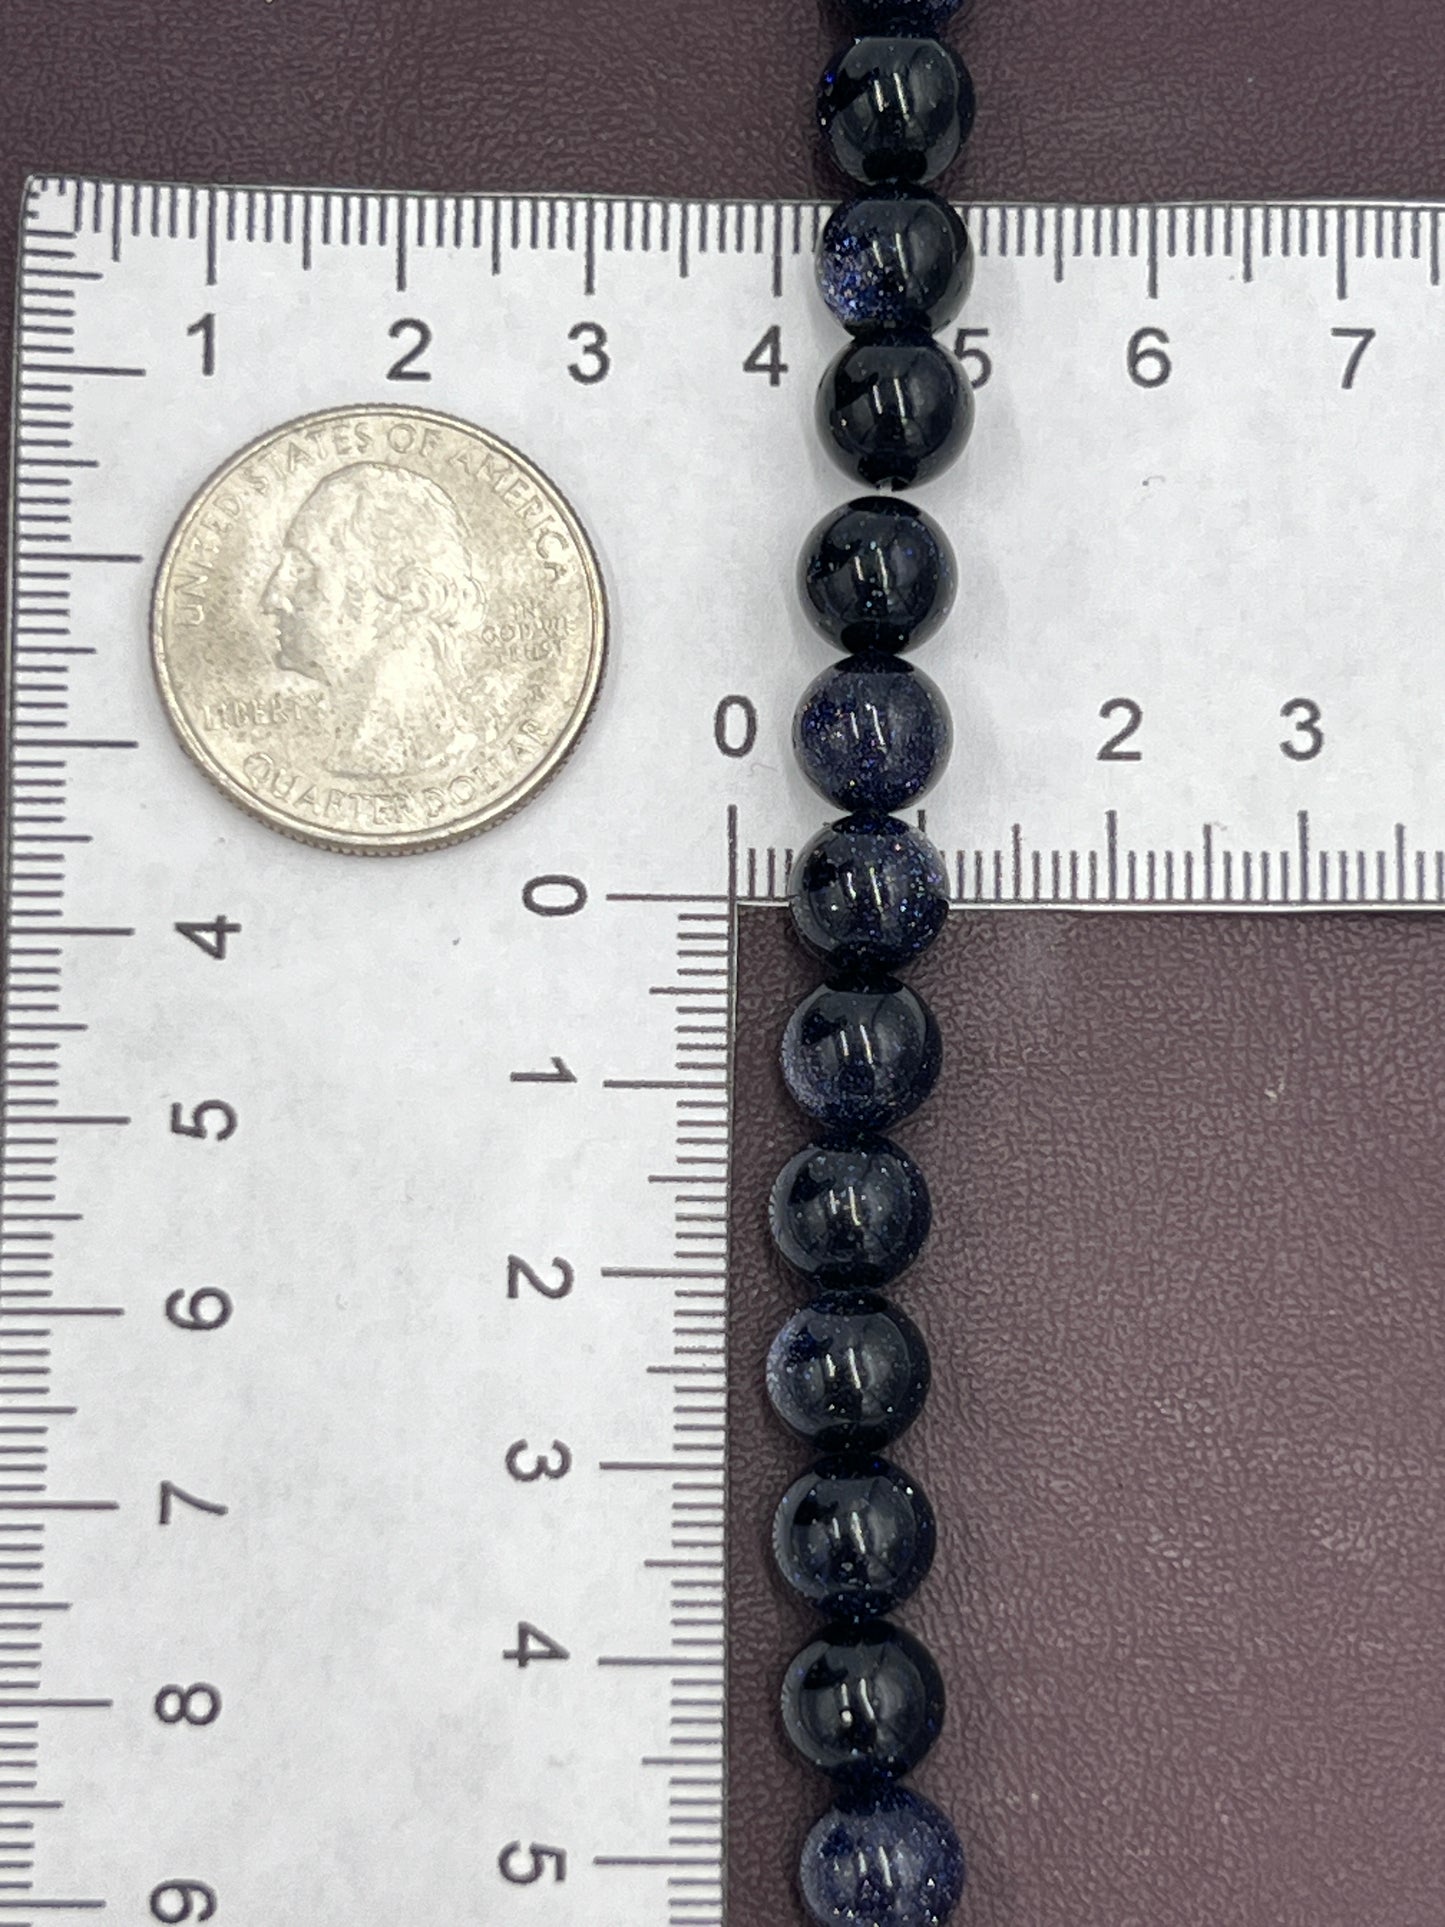 8mm Blue Goldstone Beads 1 Strand (40cm)